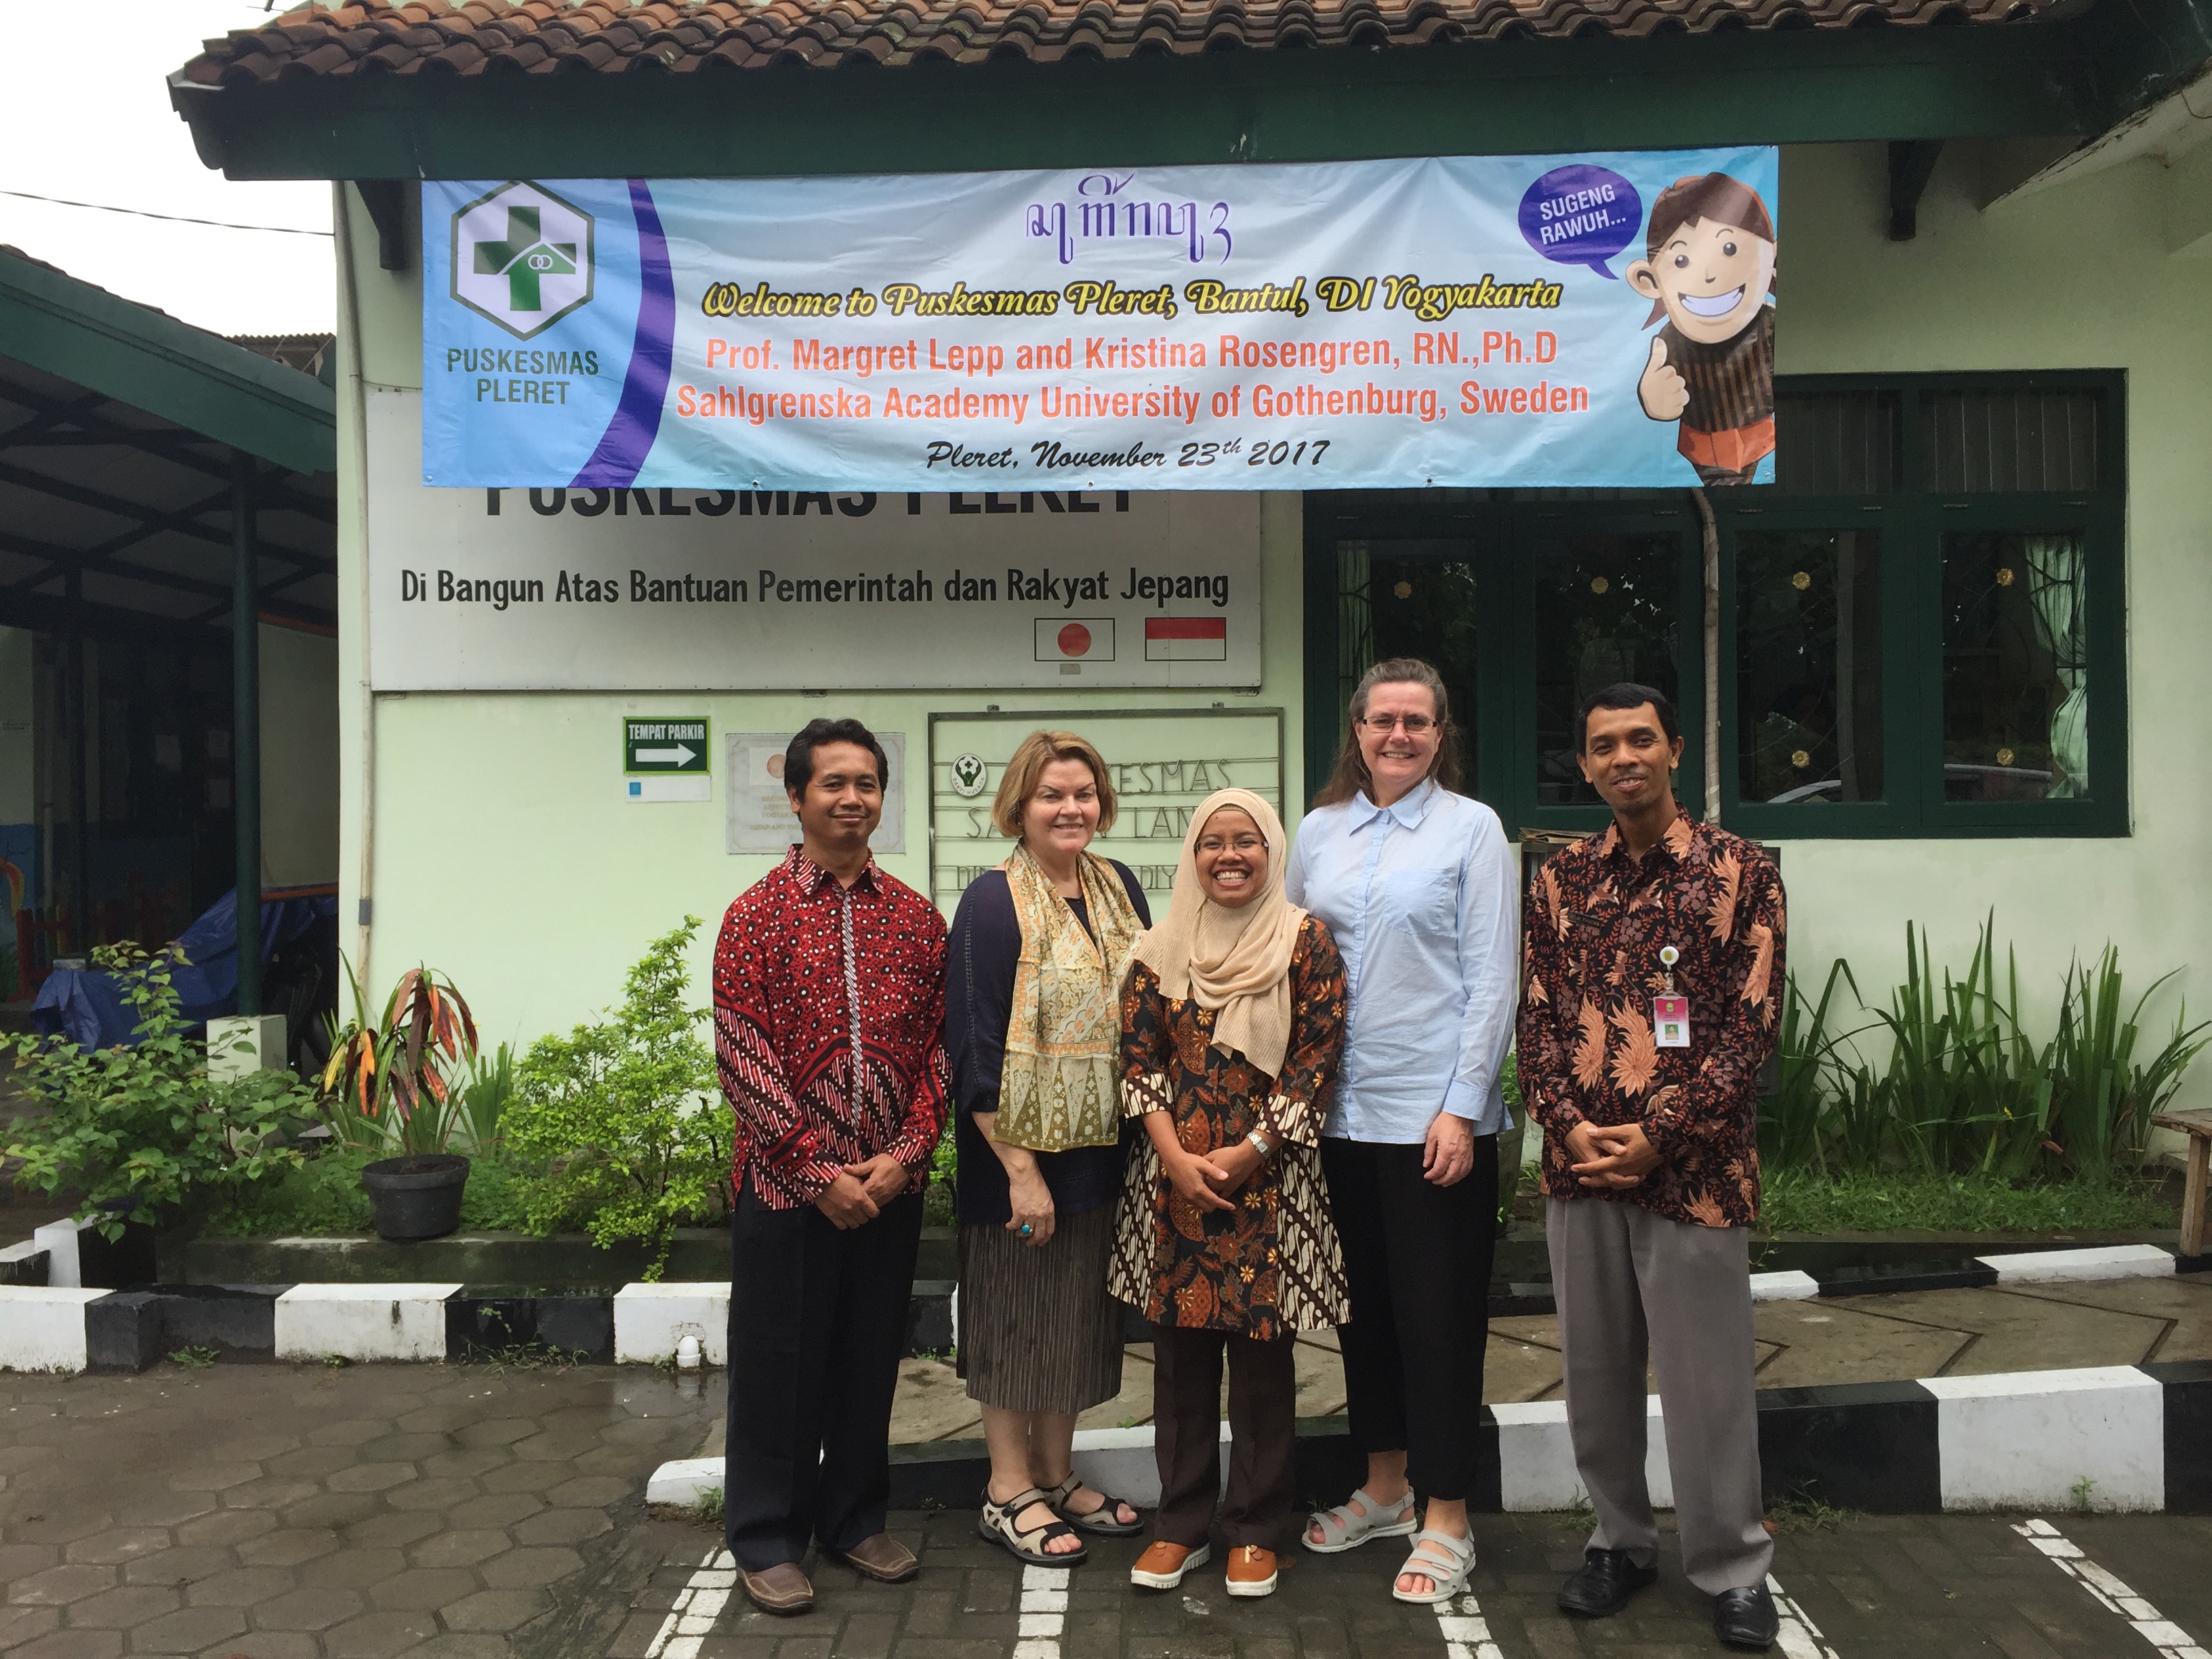 margaret Lepp och Kristina Rosengren med indonesiska kollegor